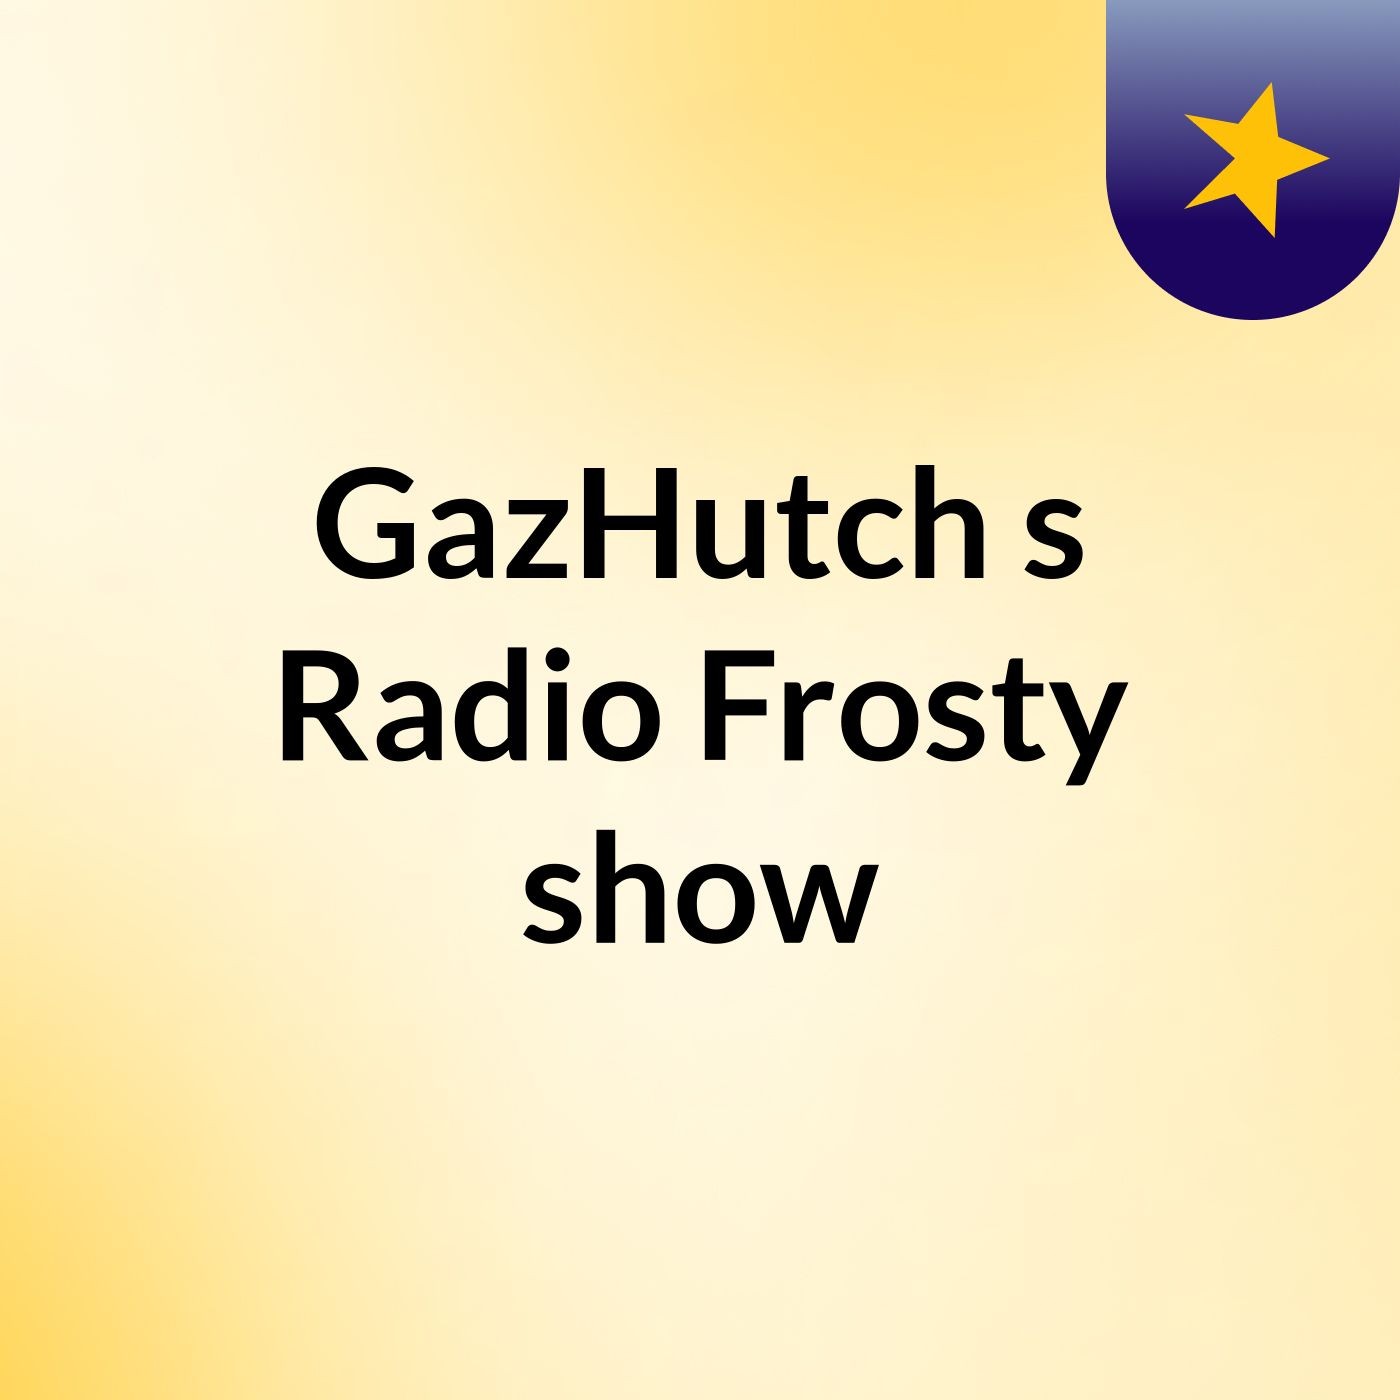 GazHutch's Radio Frosty show